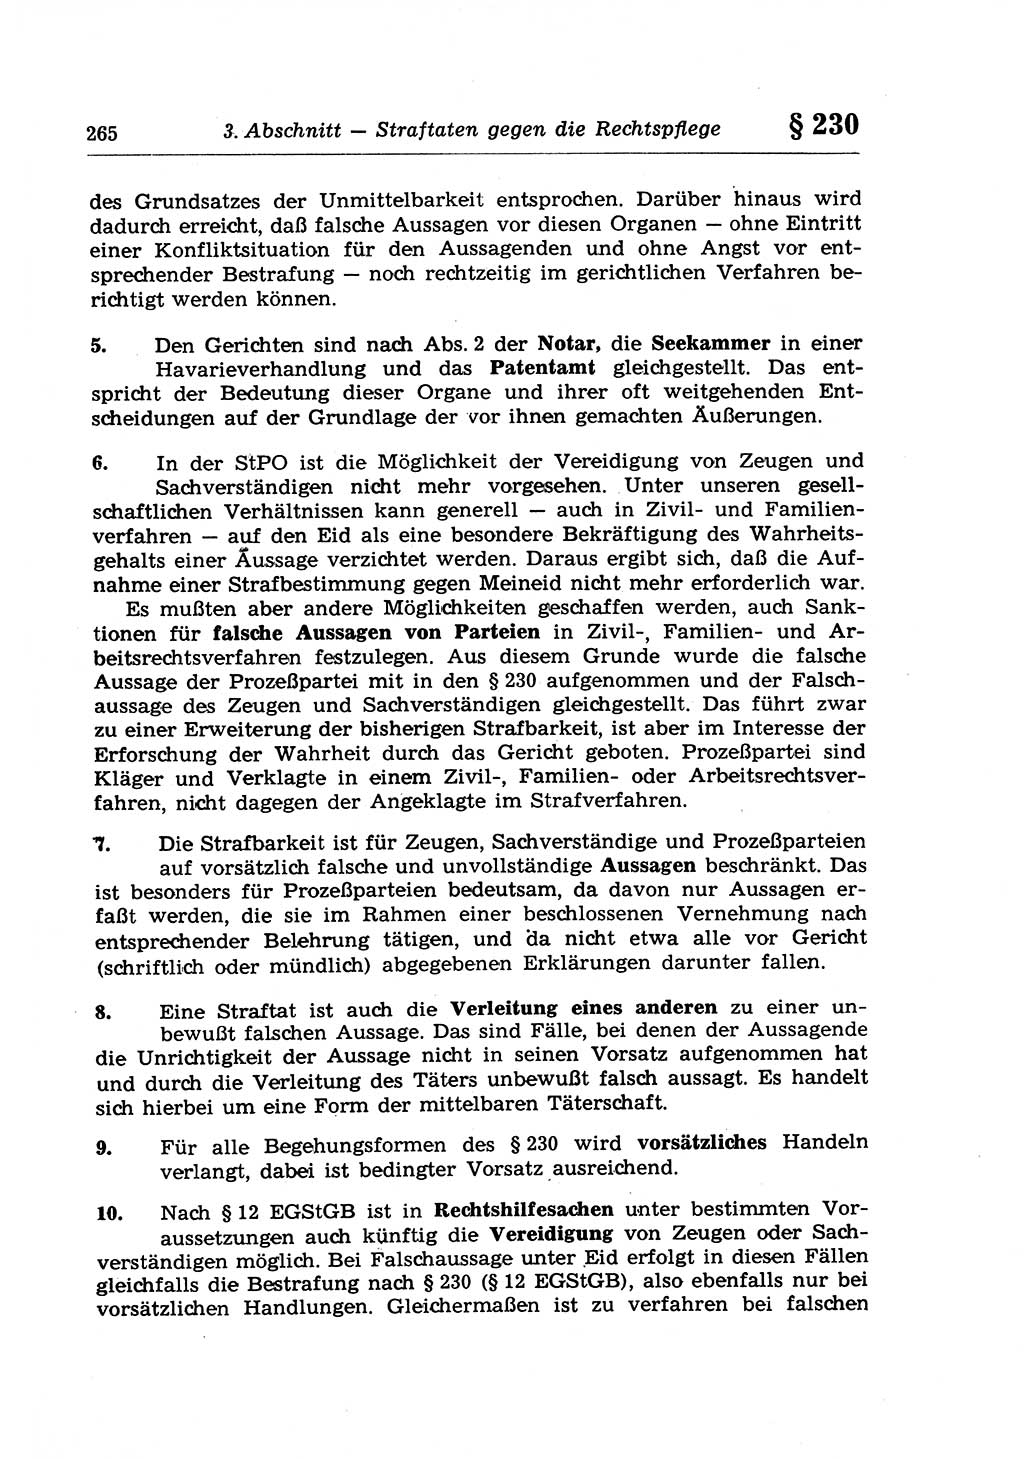 Strafrecht der Deutschen Demokratischen Republik (DDR), Lehrkommentar zum Strafgesetzbuch (StGB), Besonderer Teil 1970, Seite 265 (Strafr. DDR Lehrkomm. StGB BT 1970, S. 265)